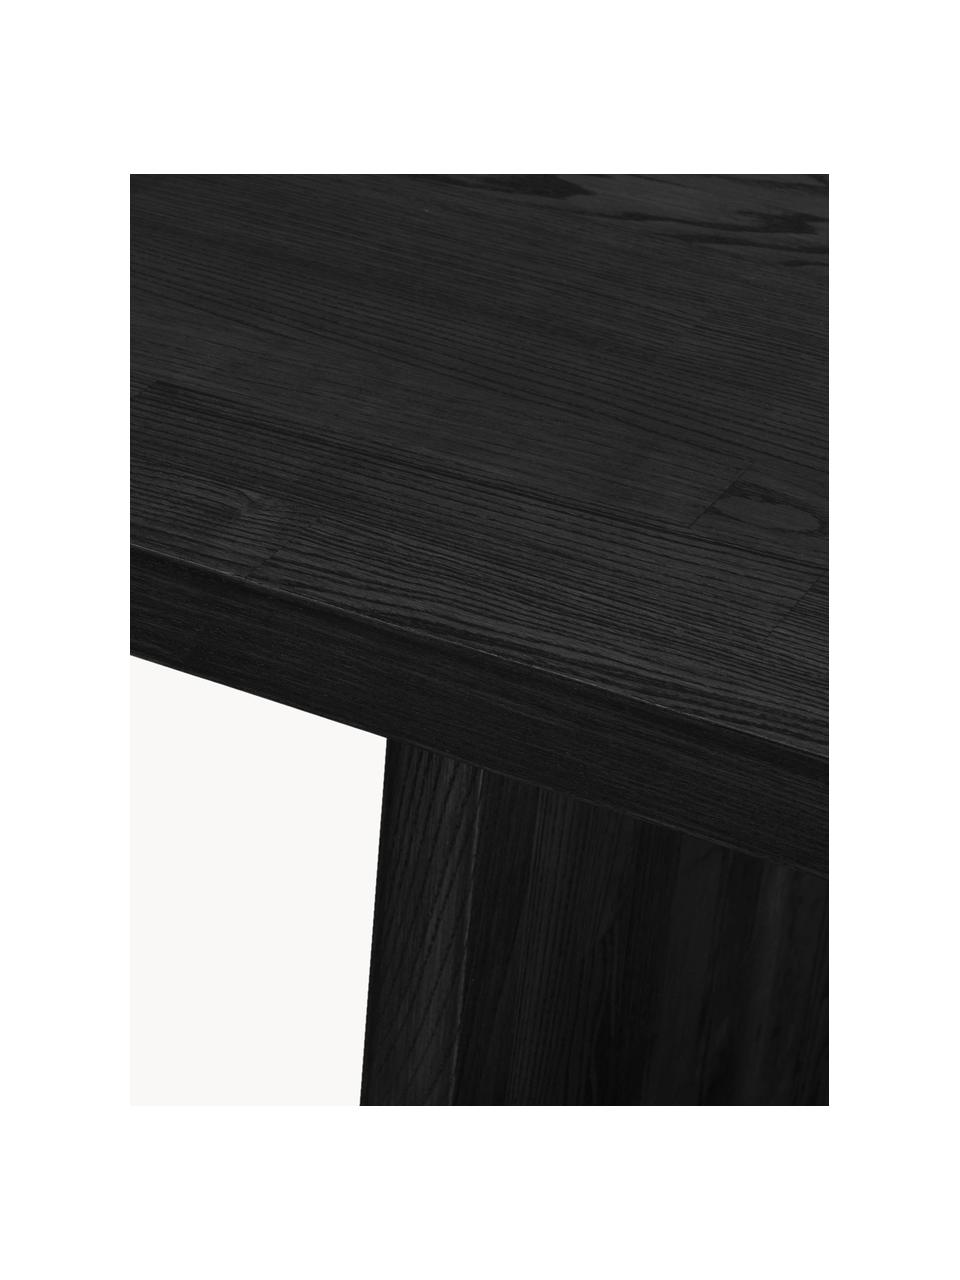 Jídelní stůl z jasanového dřeva Emmet, 240 x 95 cm, Masivní lakované dubové dřevo

Tento produkt je vyroben z udržitelných zdrojů dřeva s certifikací FSC®., Dubové dřevo, černě lakované, Š 240 cm, H 95 cm